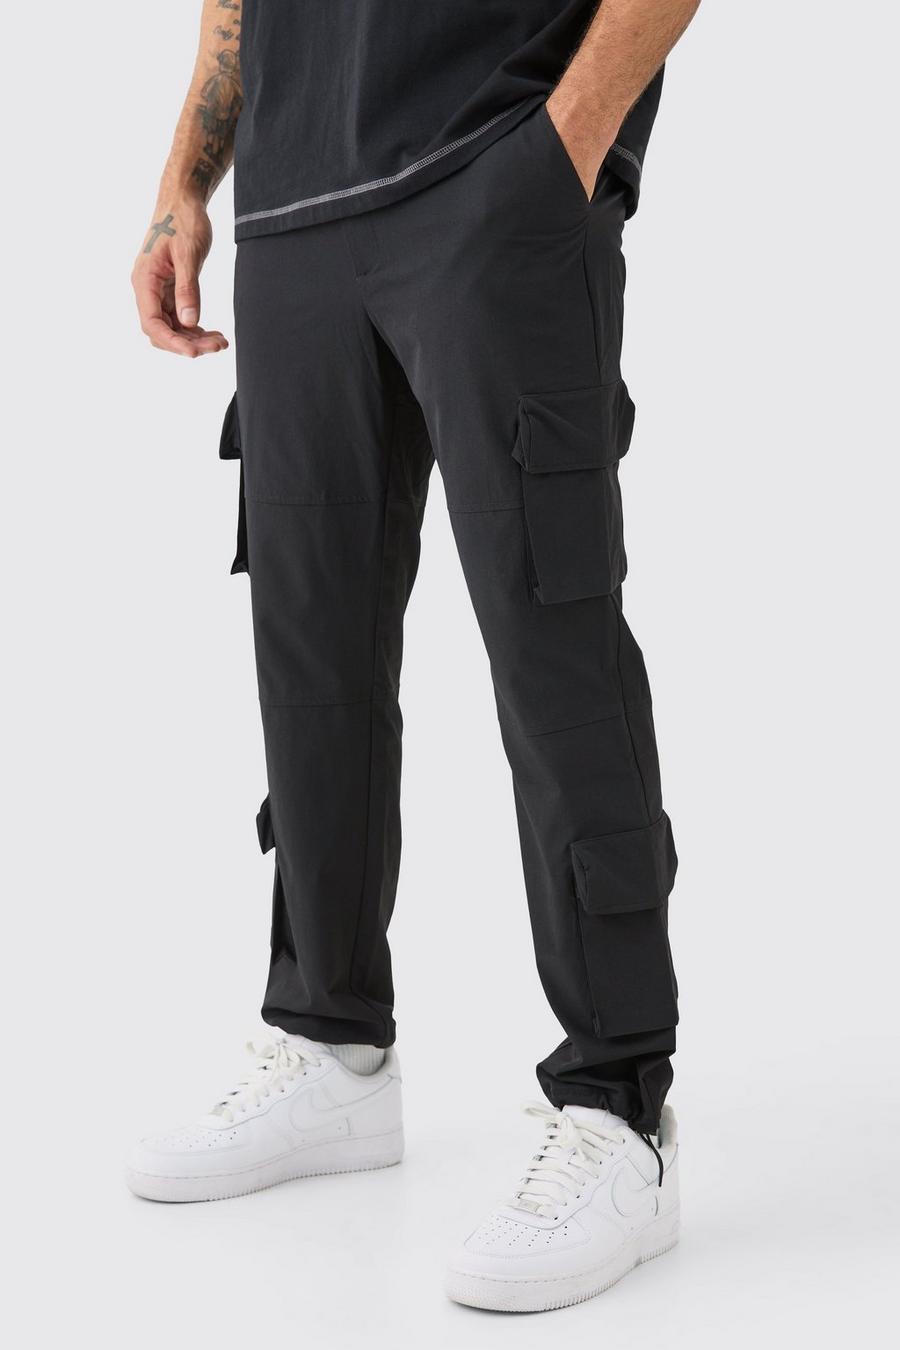 Pantalón técnico elástico con bolsillos cargo 3D, Black